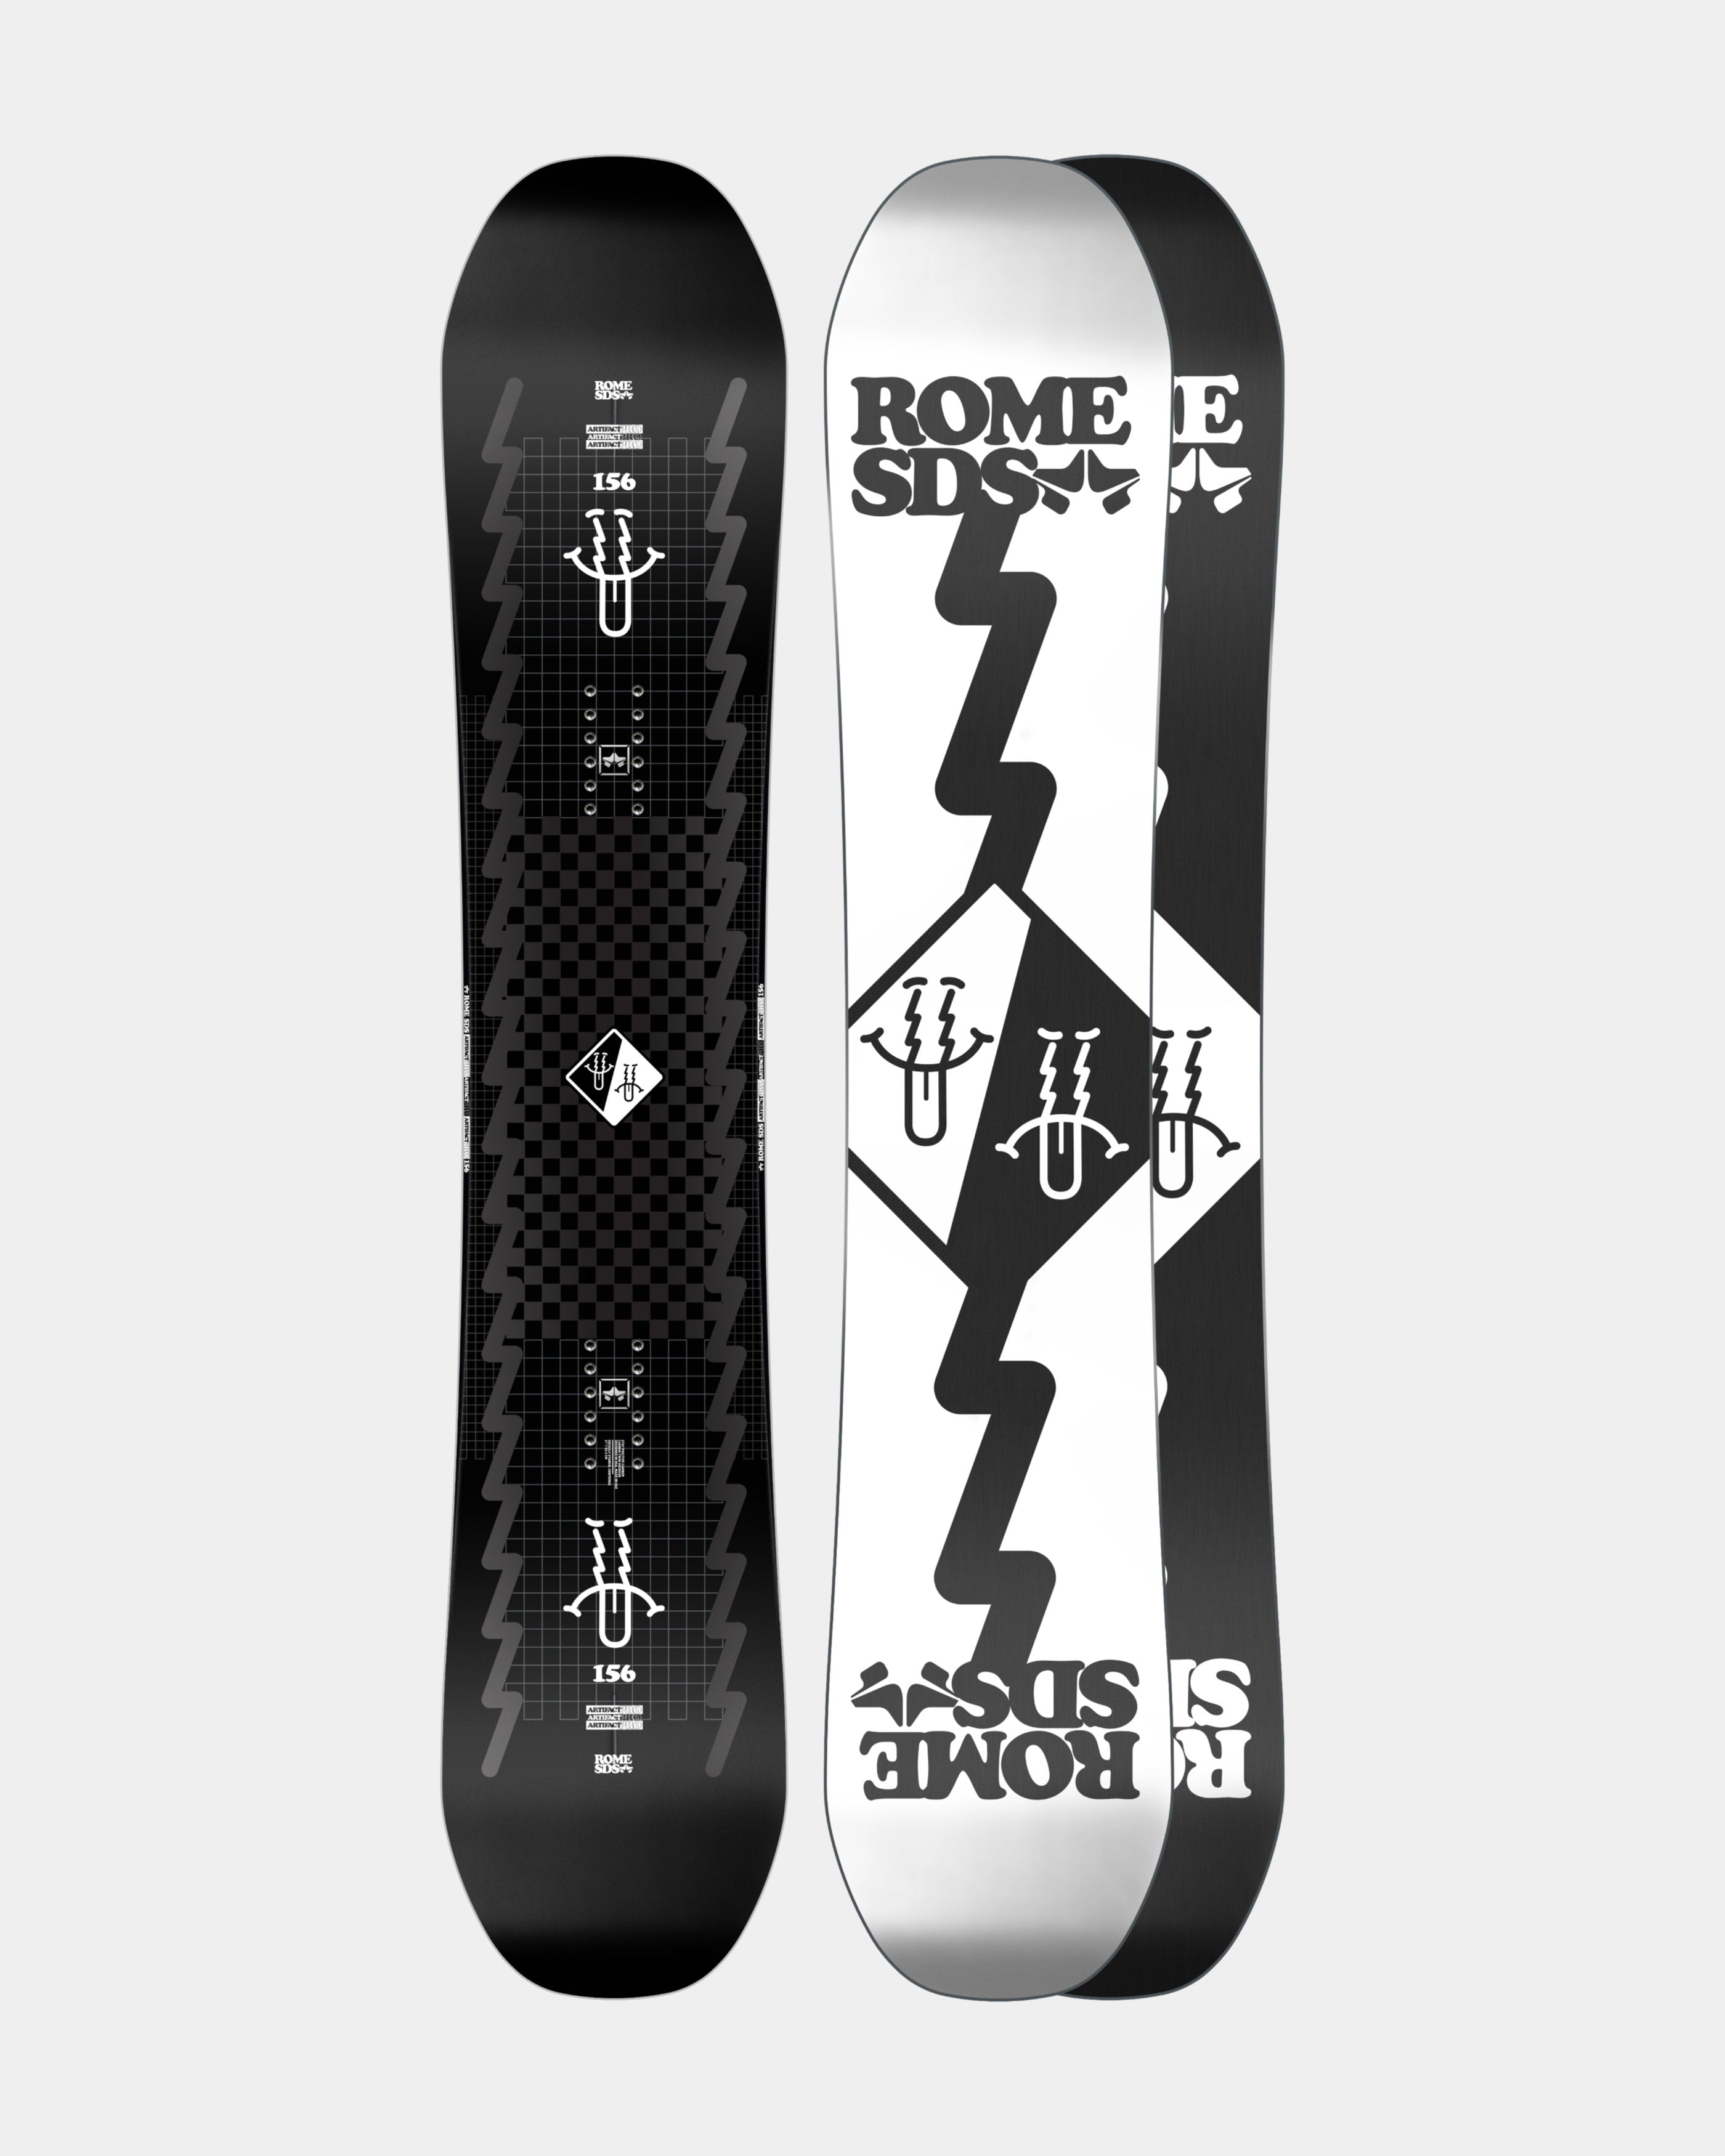 Snowboards – Rome SDS EU